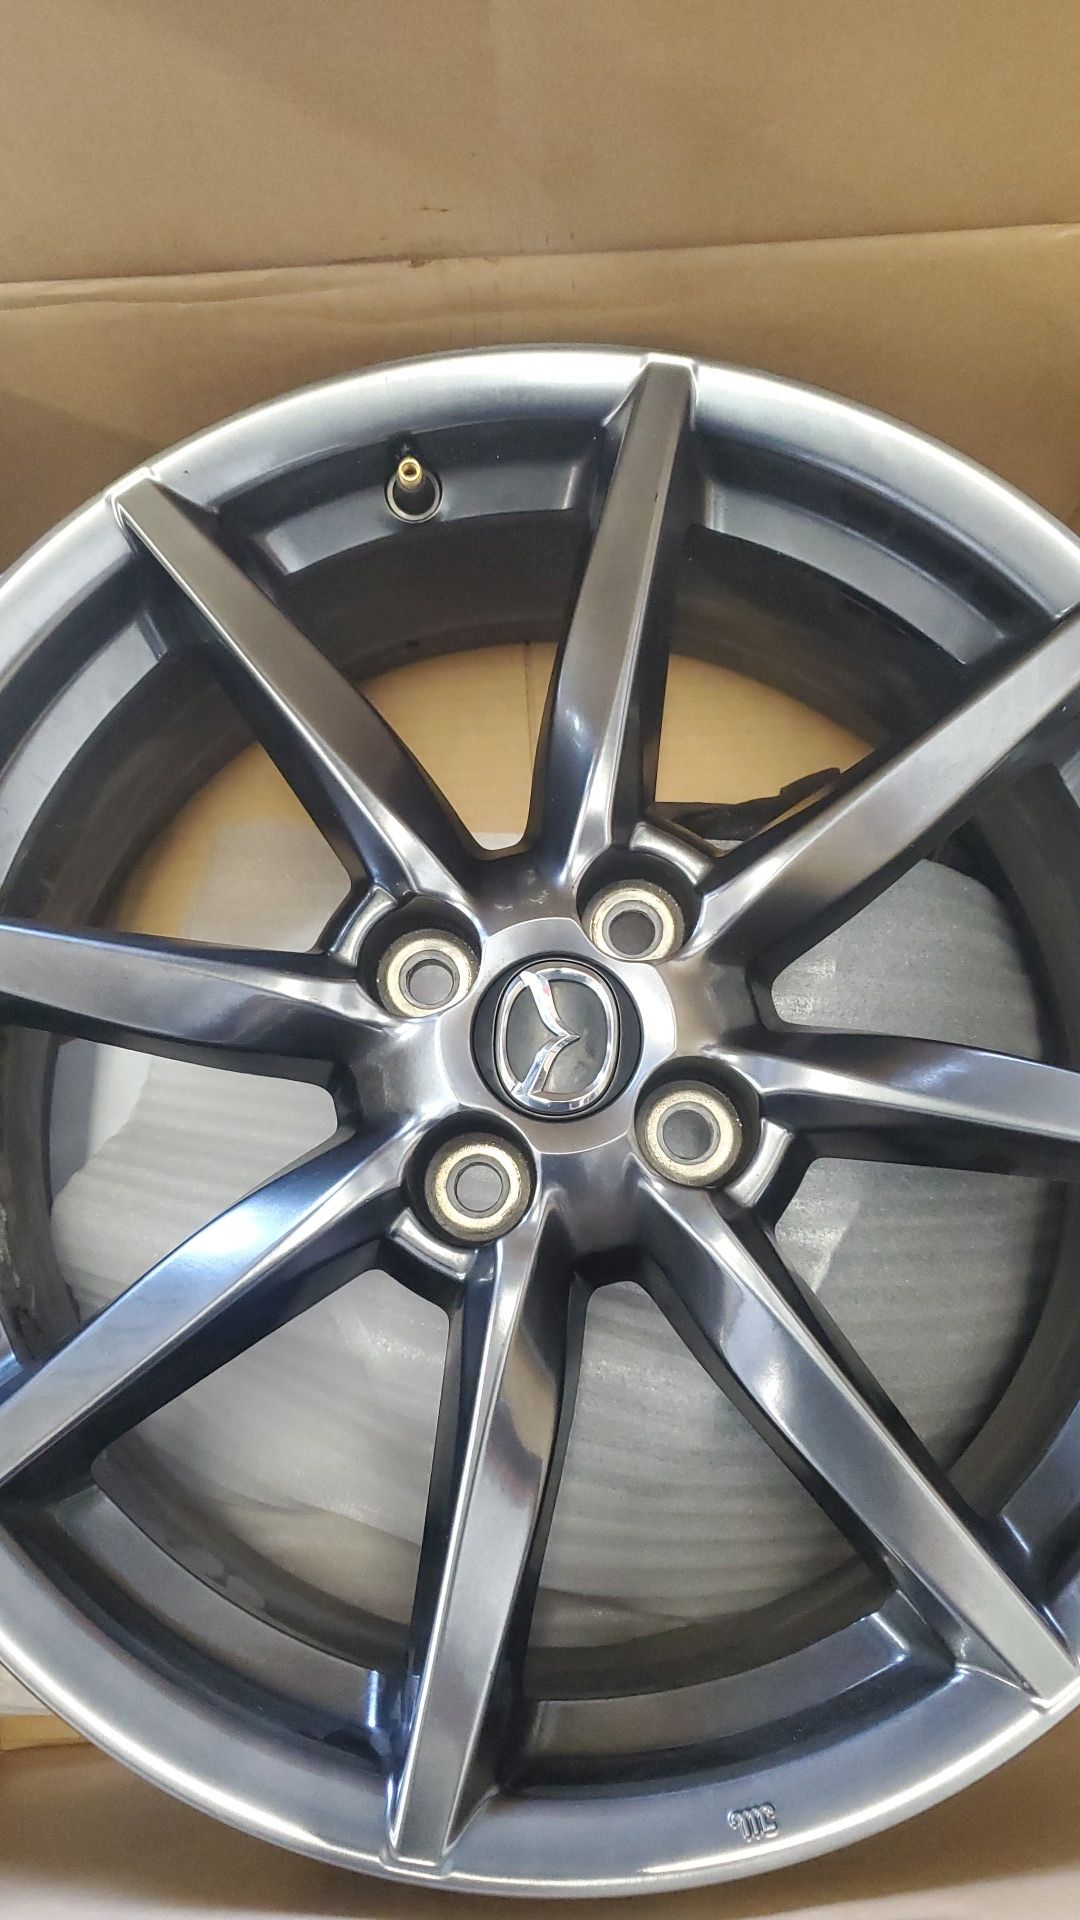 2019 Mazda Miata wheels set of 4